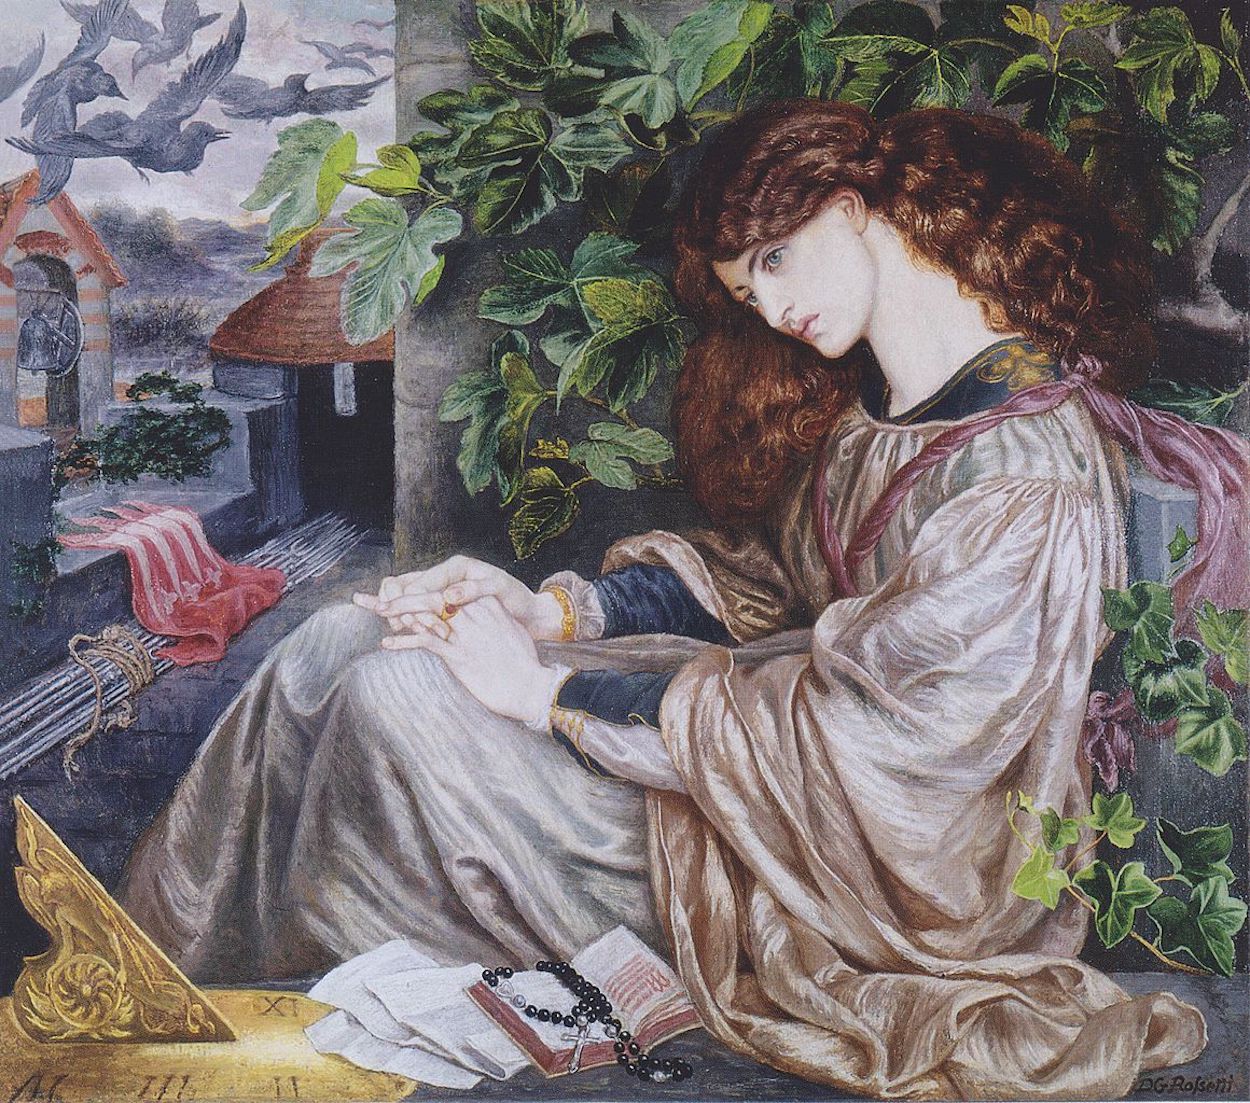 La Pia de' Tolomei by Dante Gabriel Rossetti - 1868–1880 - 104.8 x 120.6 cm 